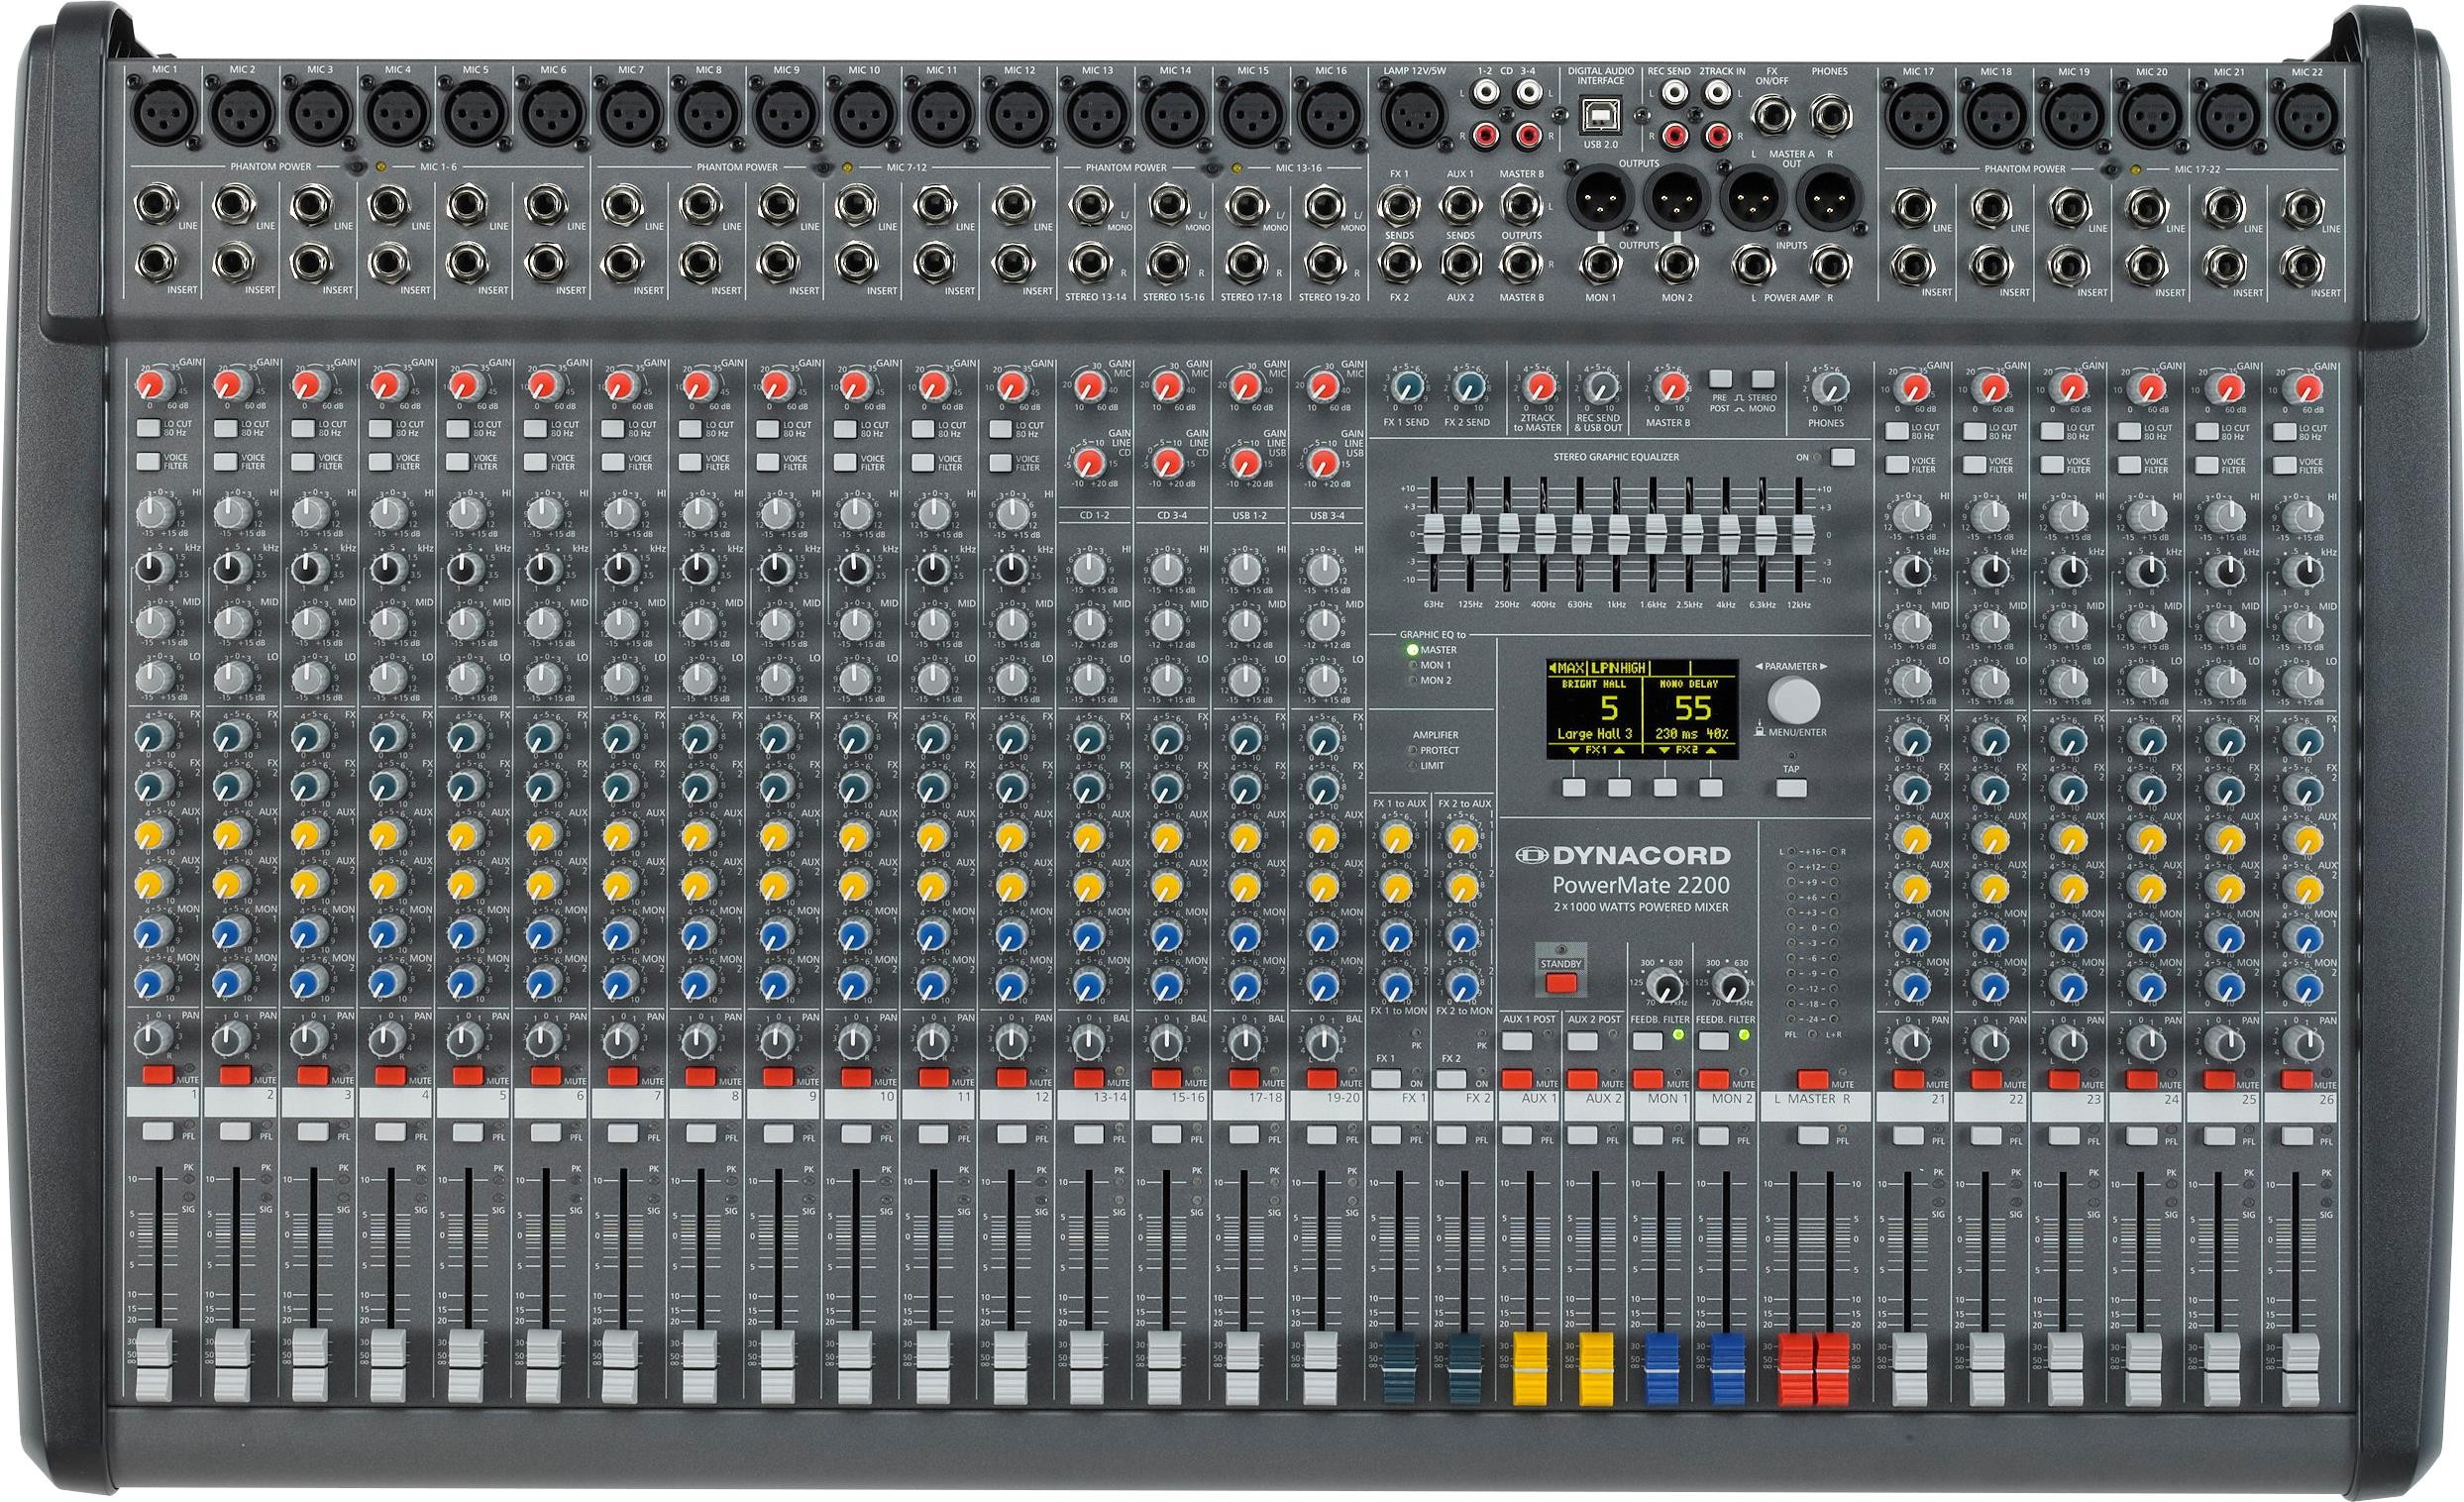 Mixere cu amplificare - Mixer cu amplificare Dynacord PowerMate 2200-3, audioclub.ro